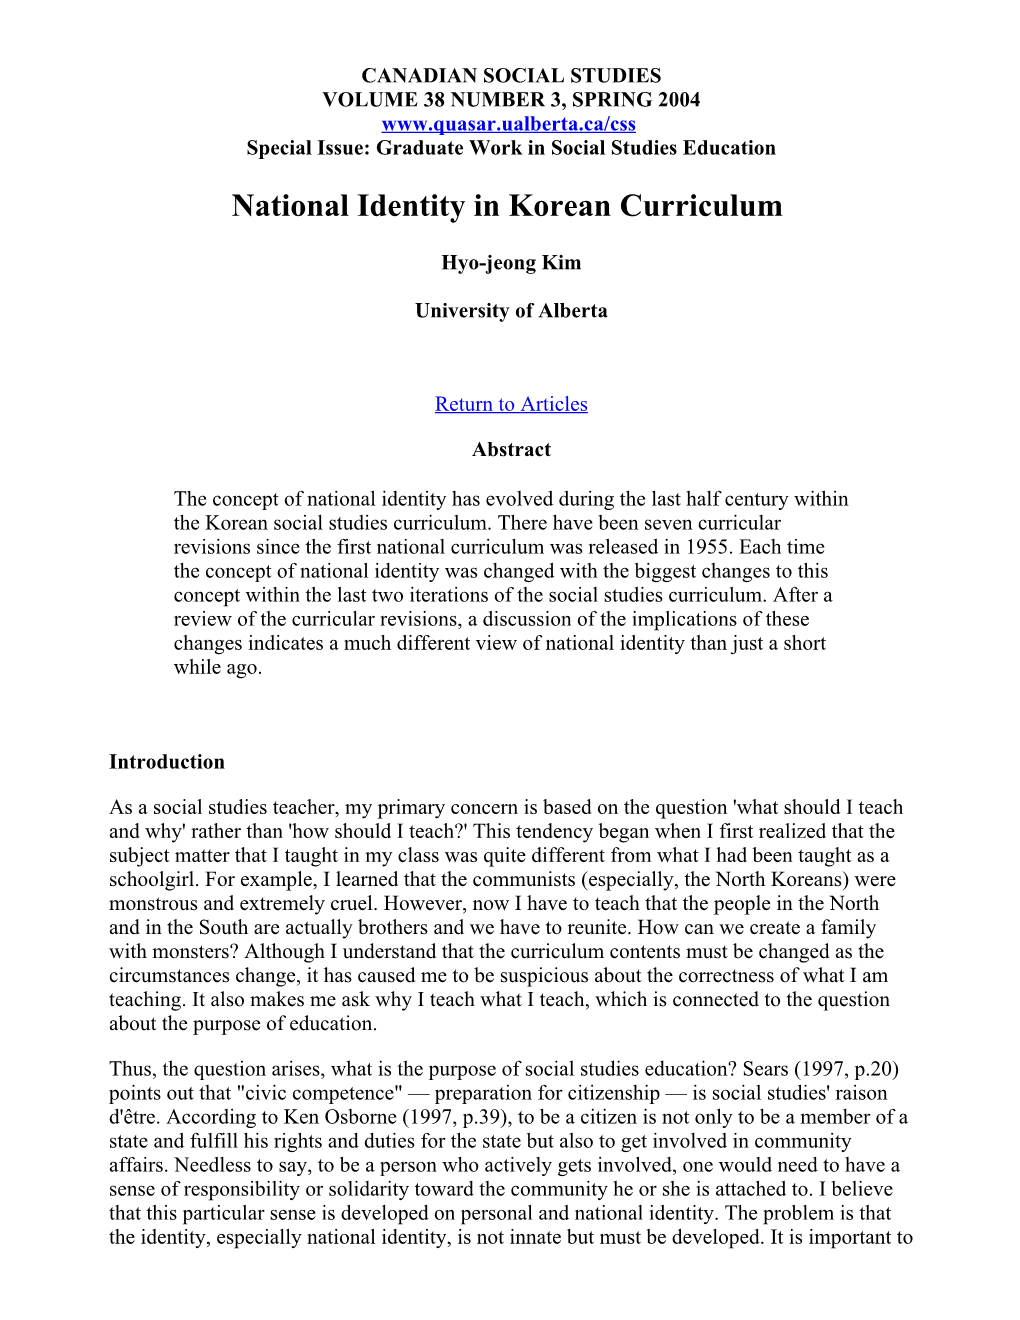 National Identity in Korean Curriculum